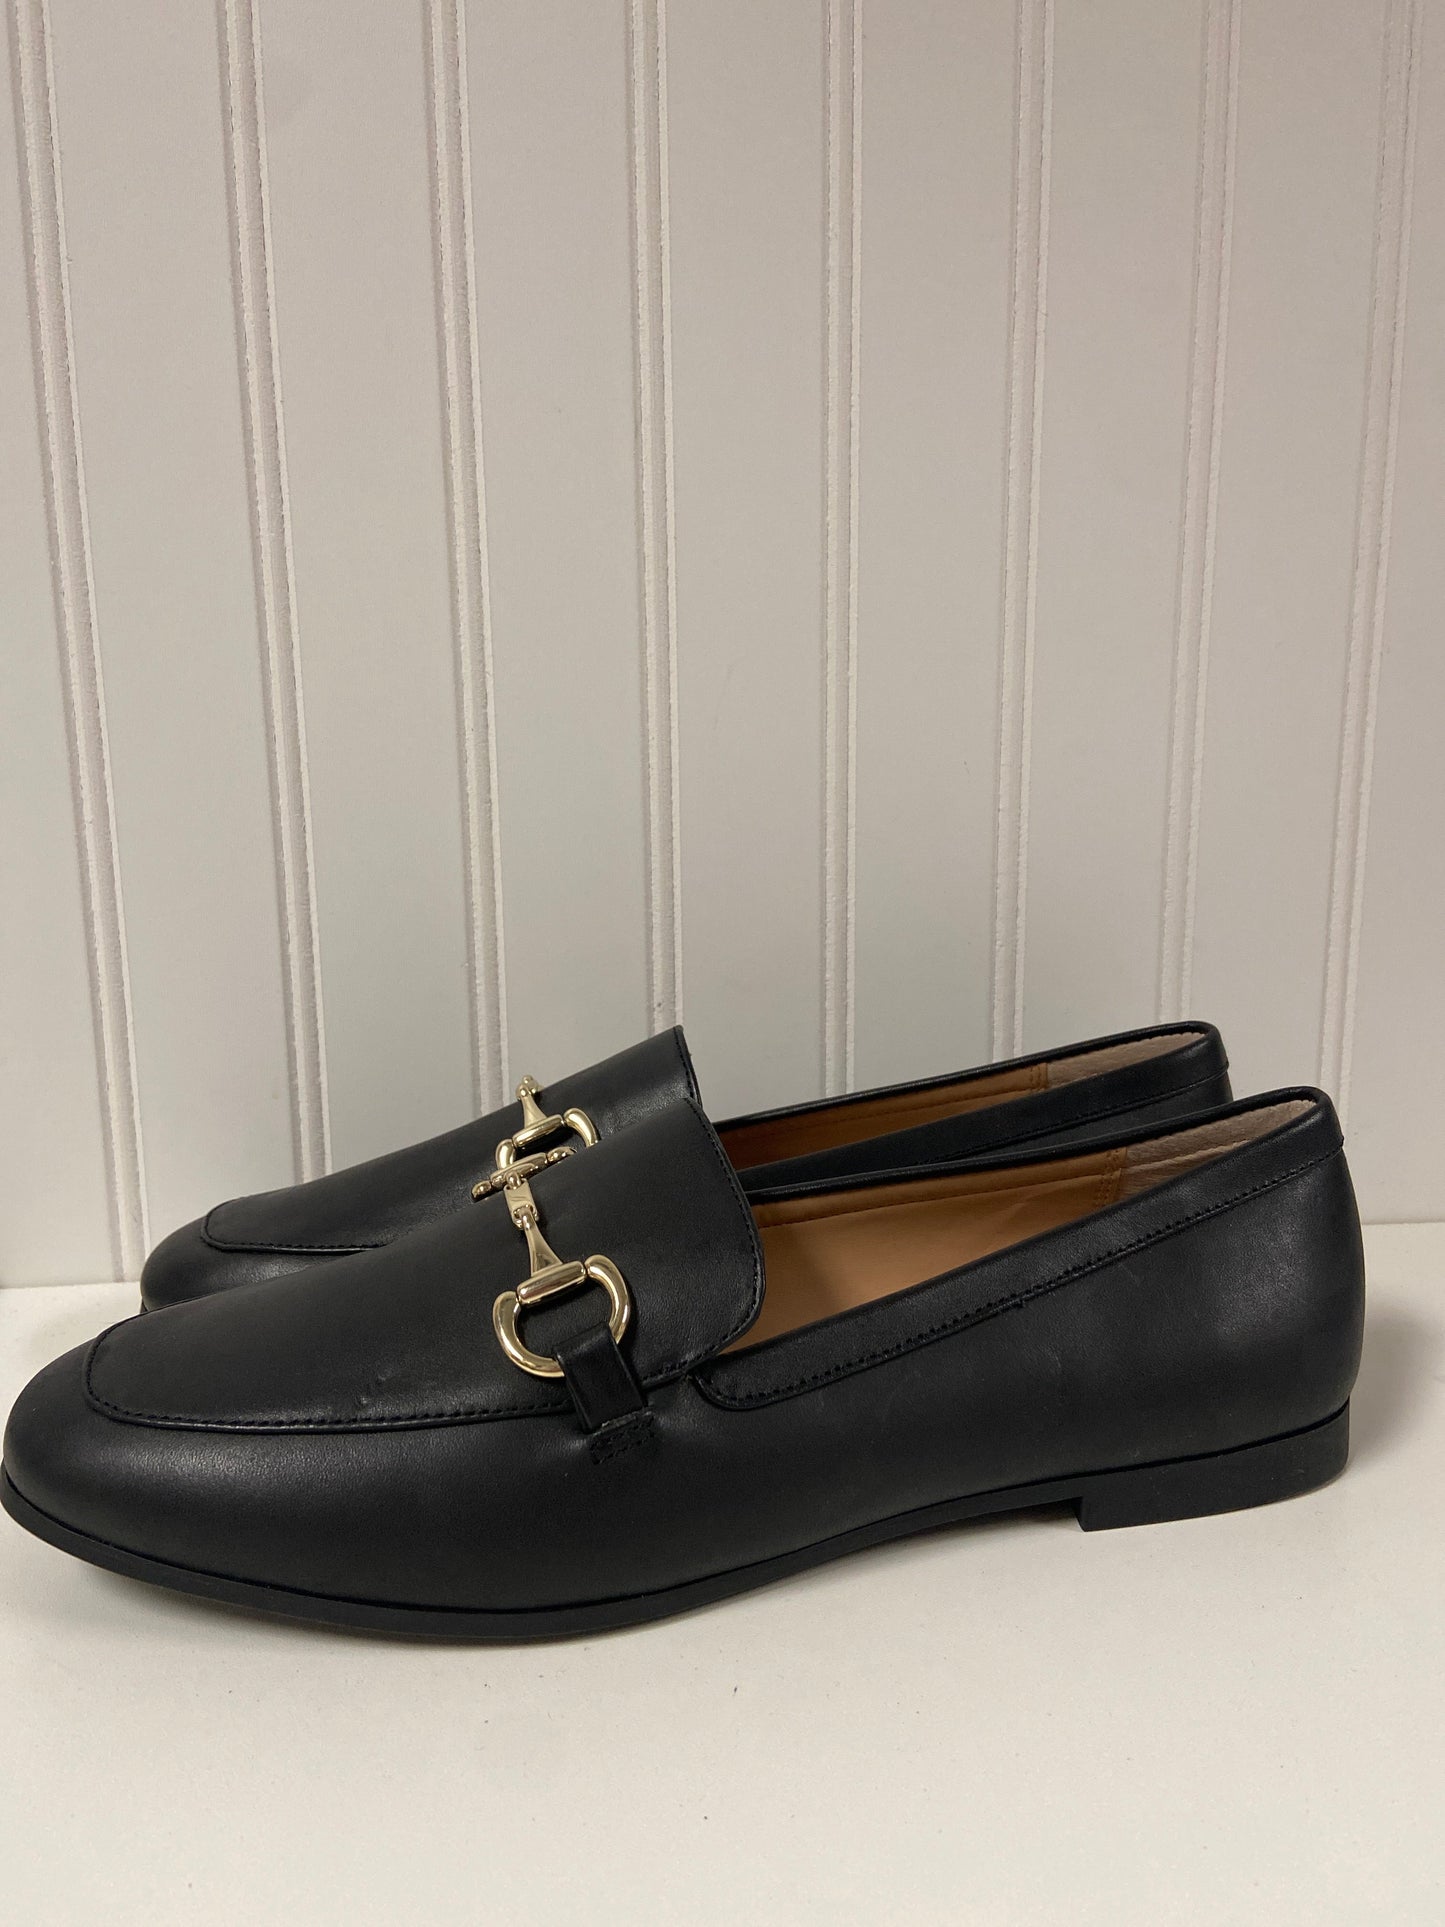 Black Shoes Flats Inc, Size 9.5